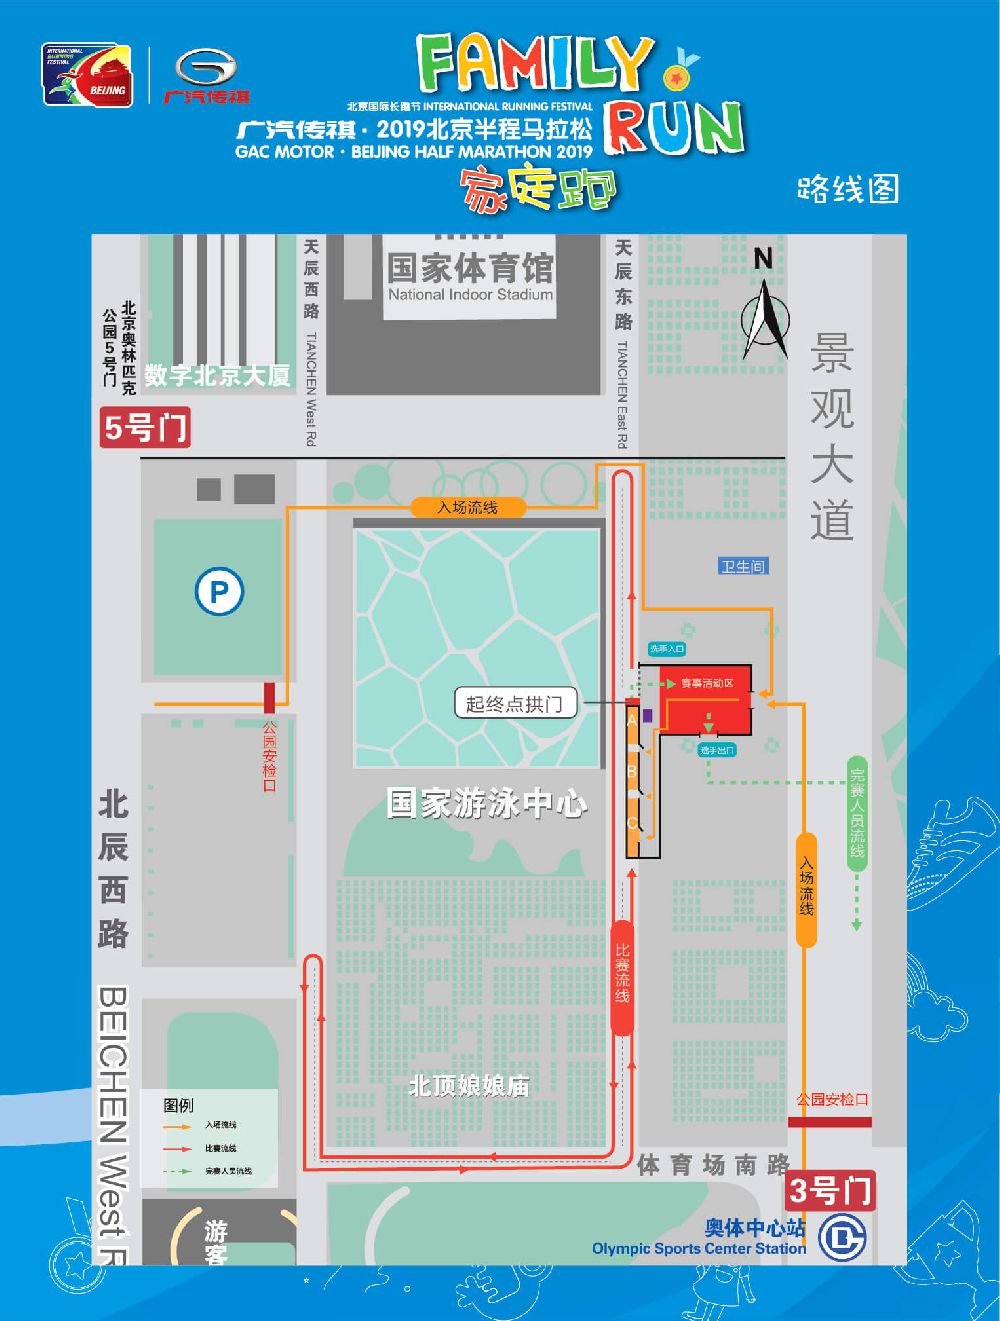 2019北京国际长跑节半程马拉松家庭跑比赛时间及路线